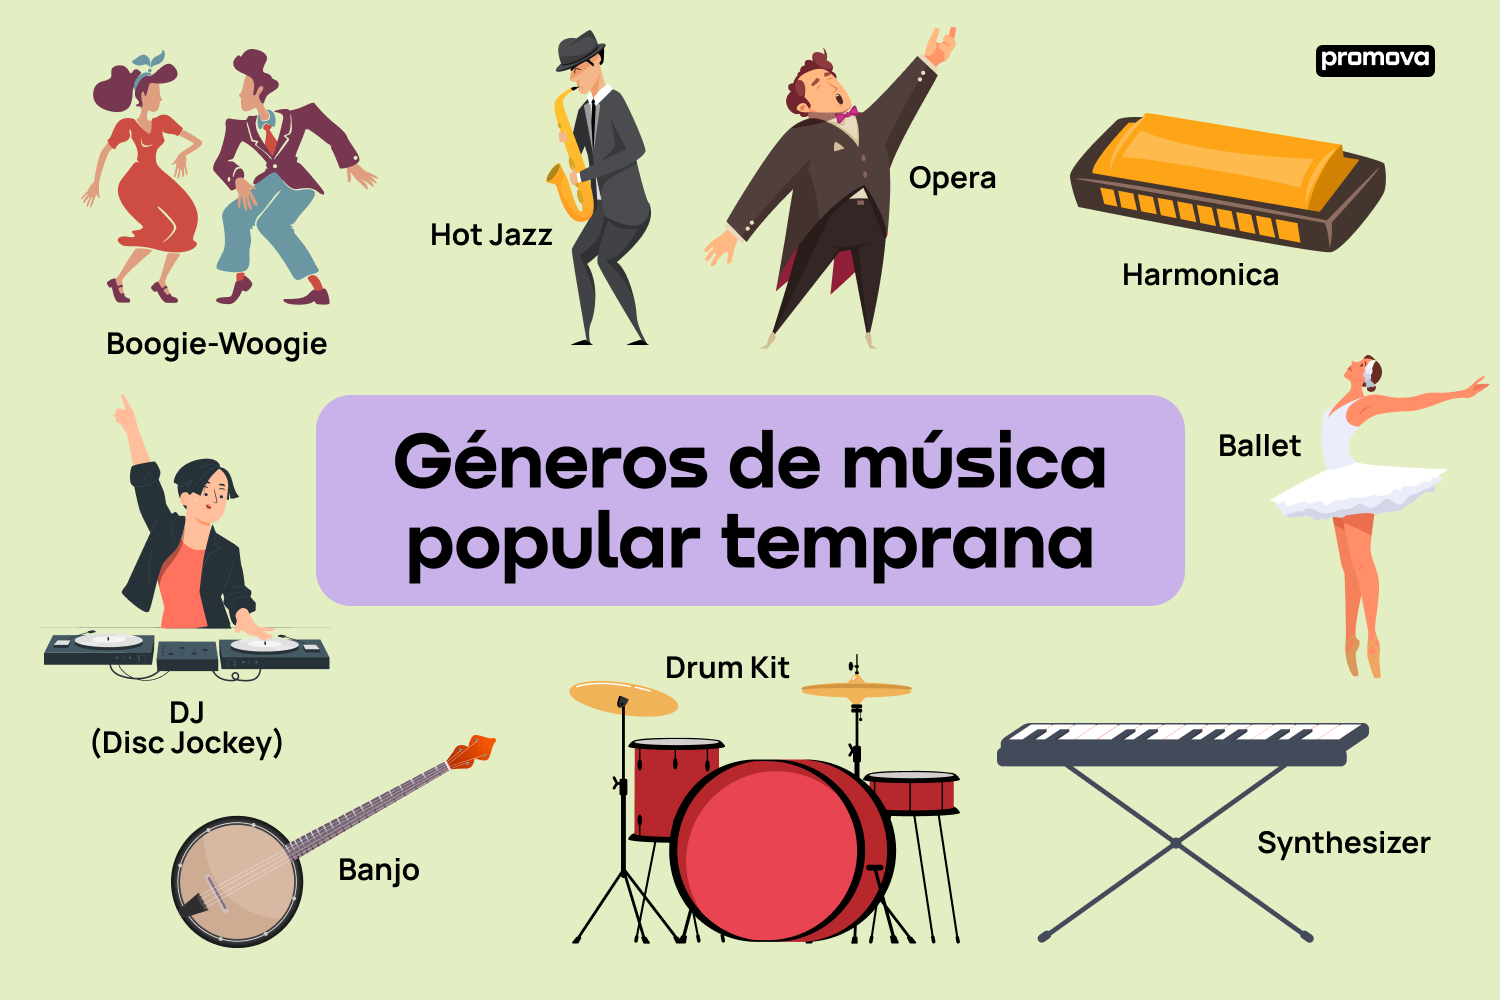 Aprende el vocabulario de los géneros musicales populares de ayer